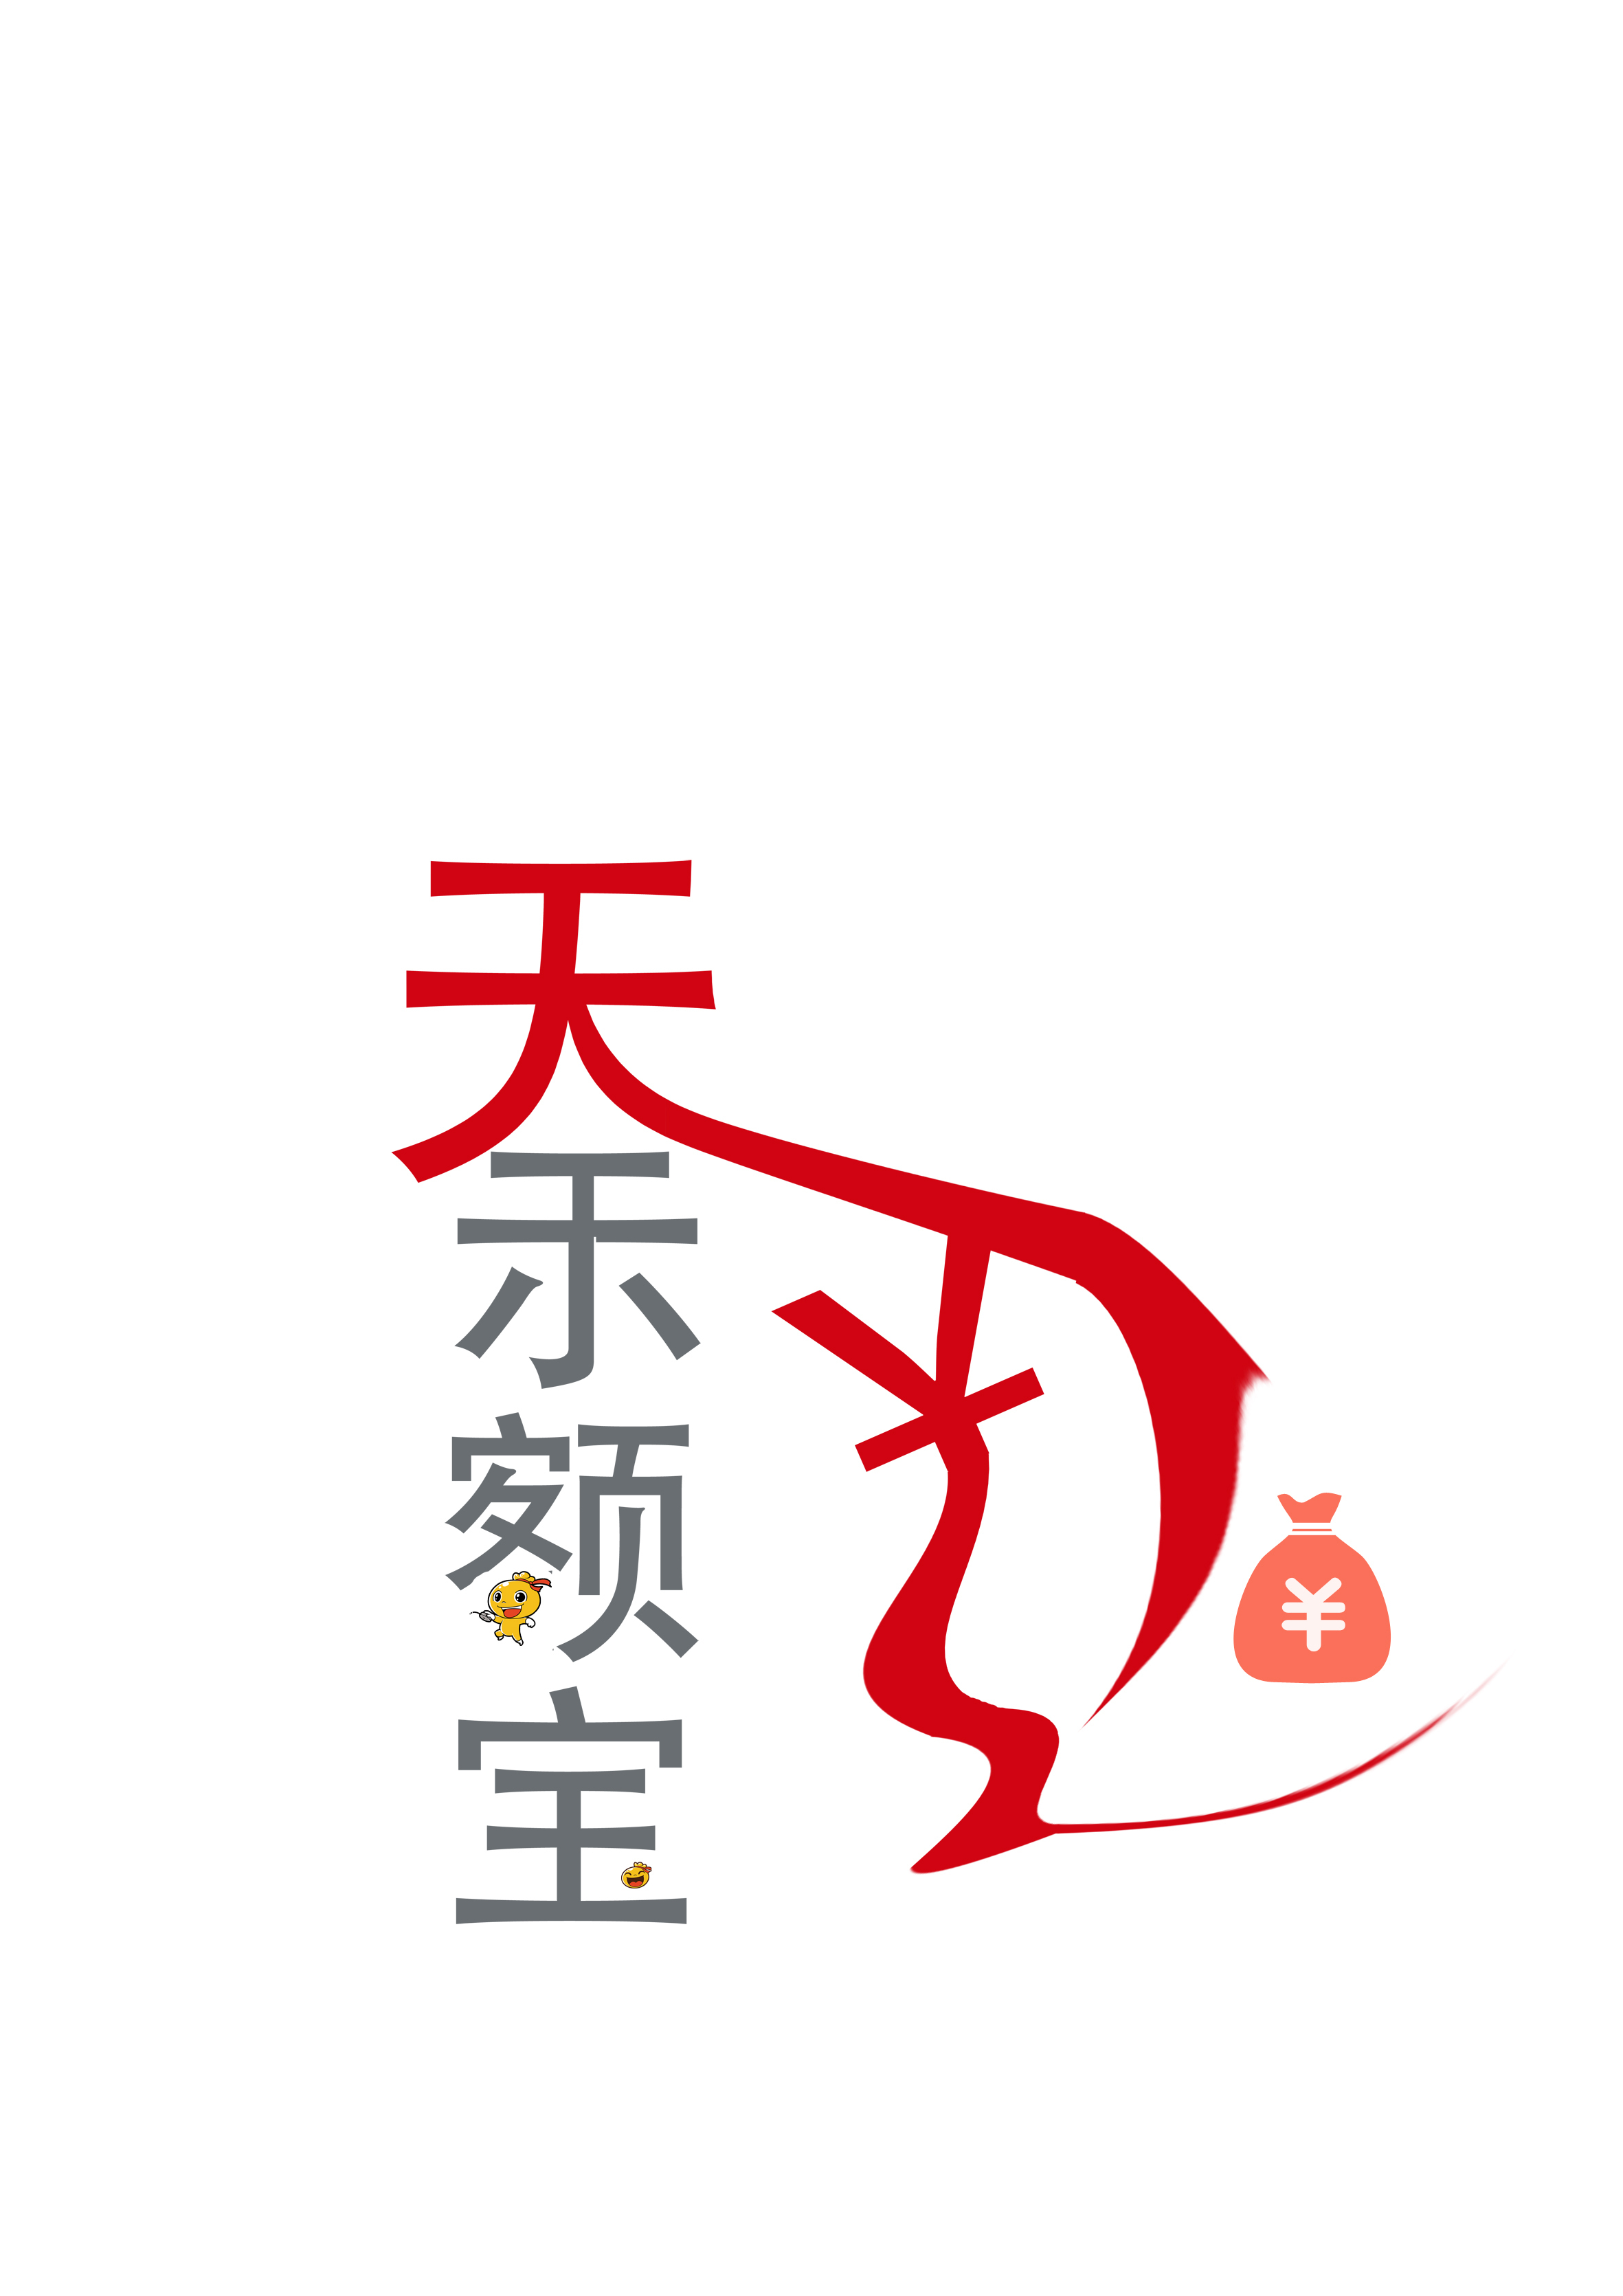 天弘logo